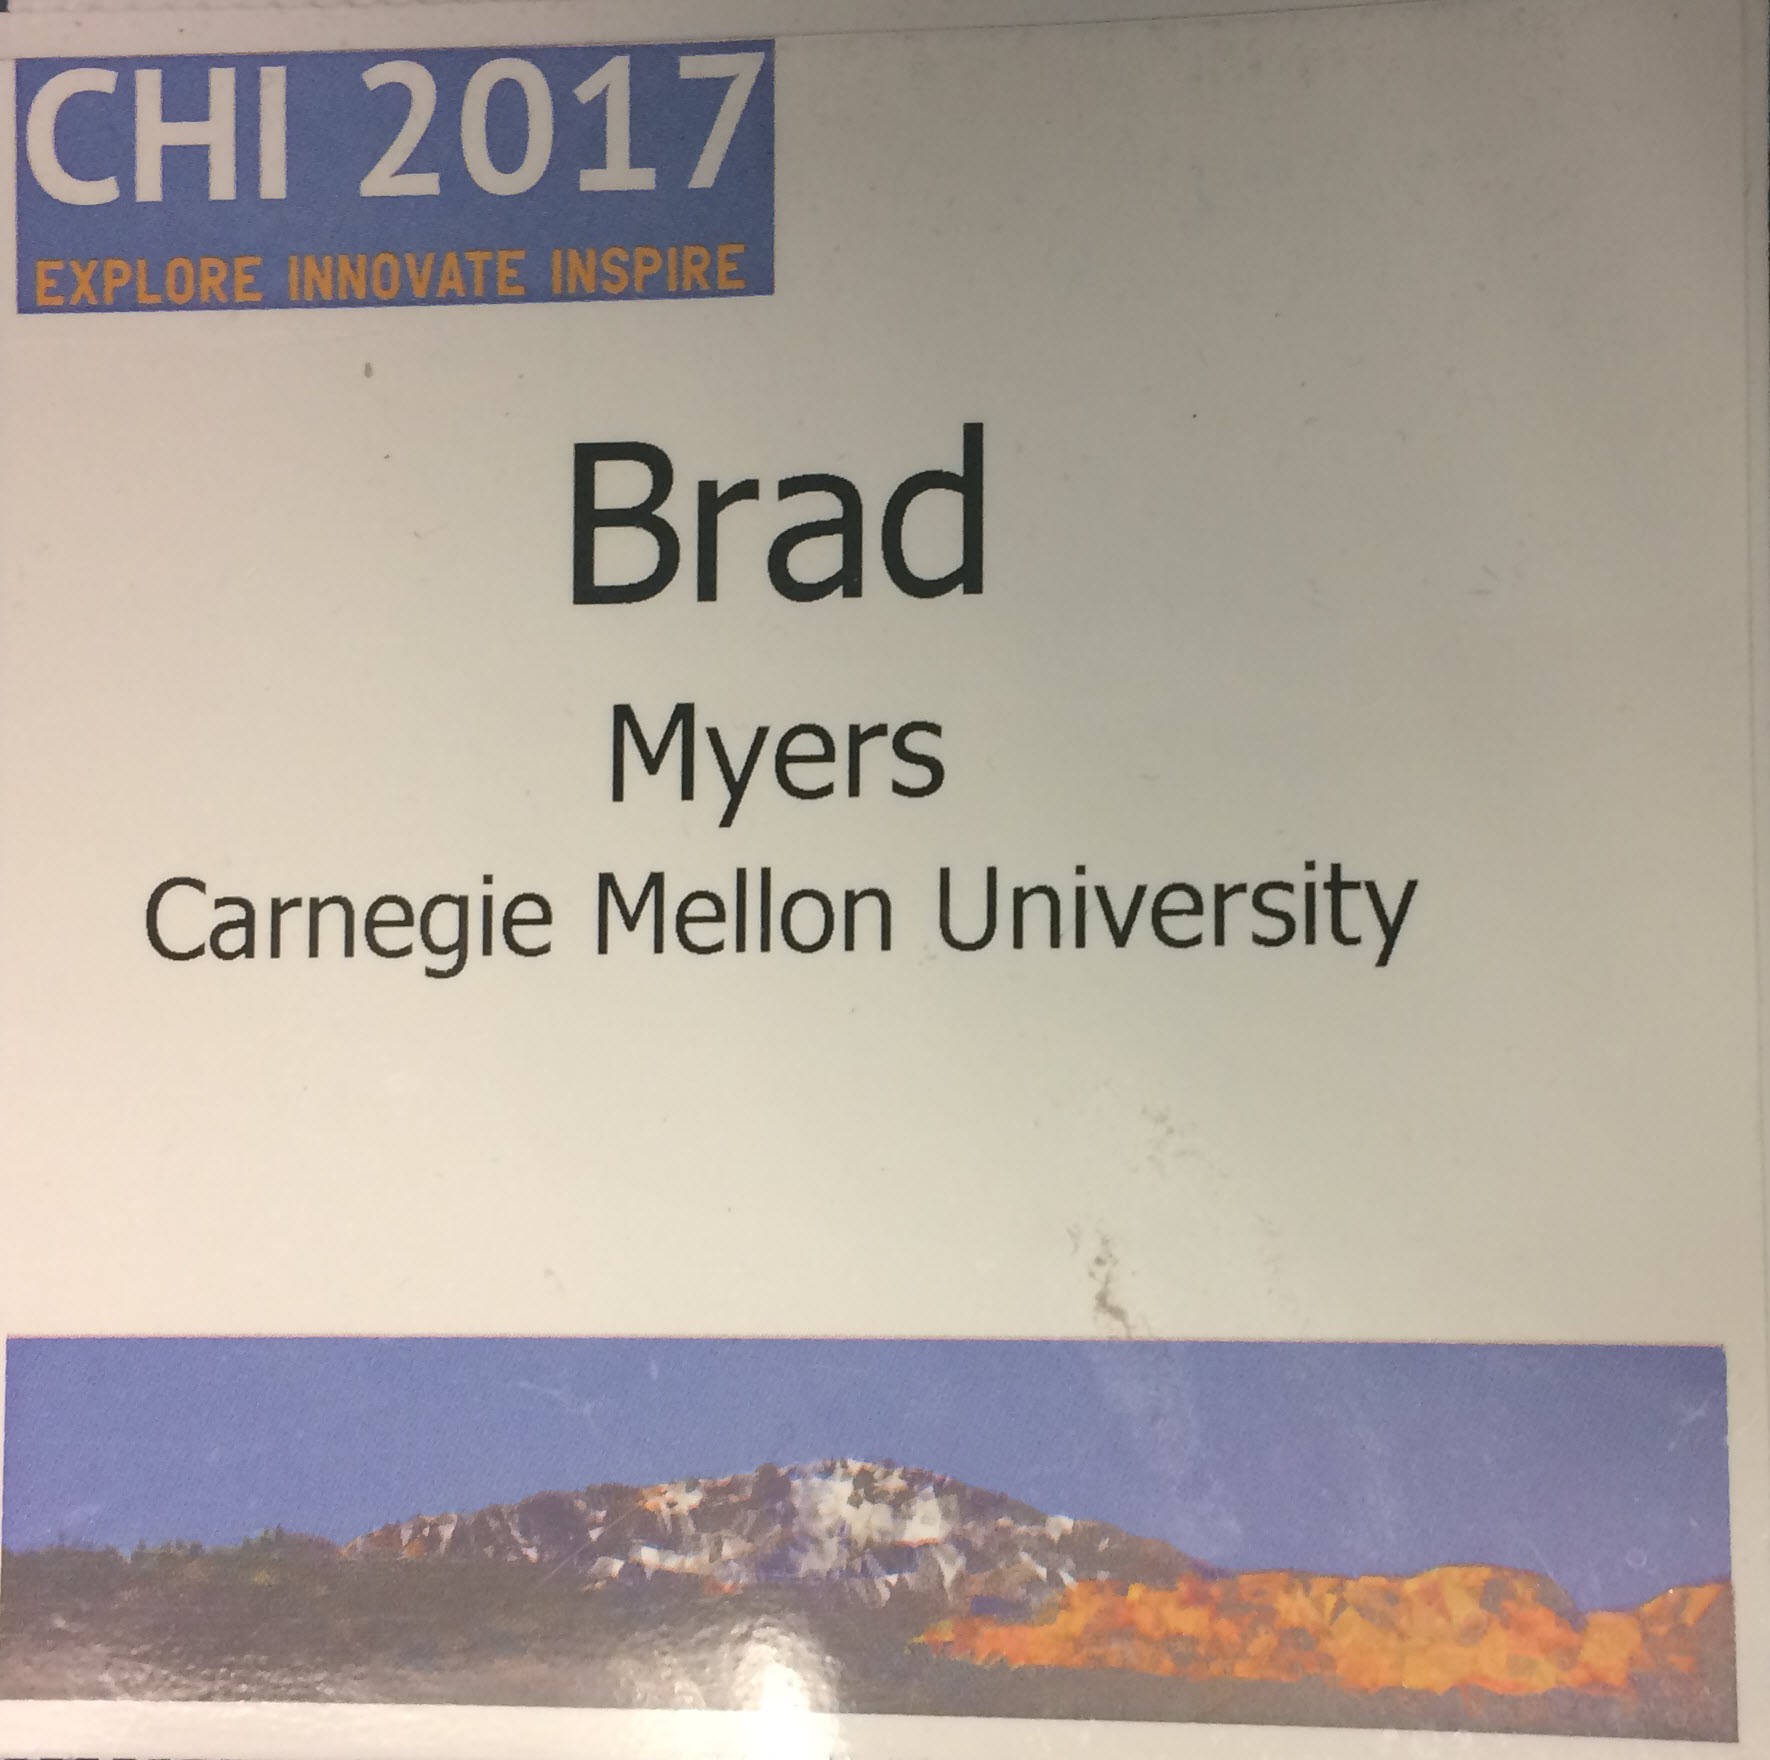 CHI'2017 badge